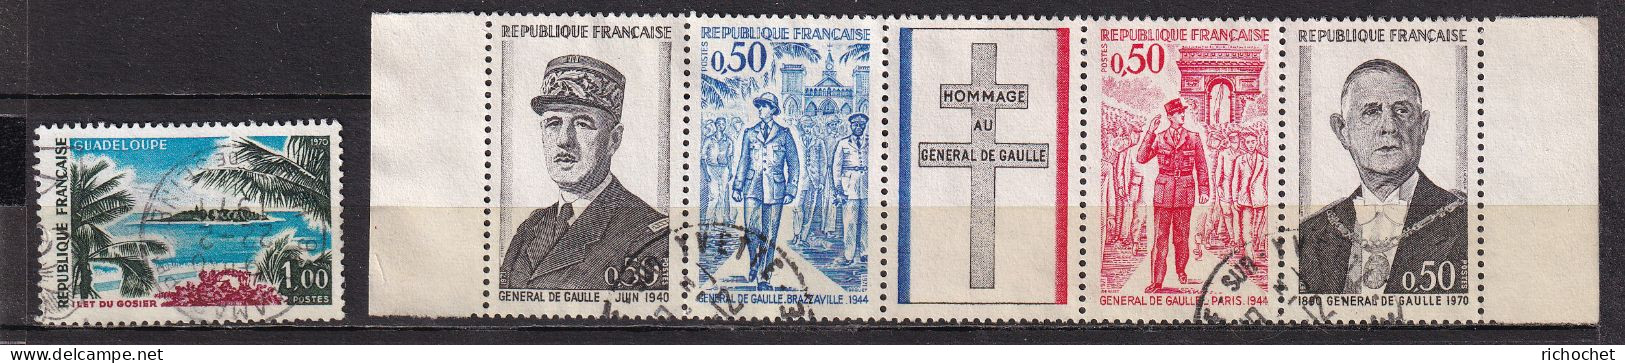 France  1646 + 1695 à 1698 Se Tenant La Bande - Used Stamps